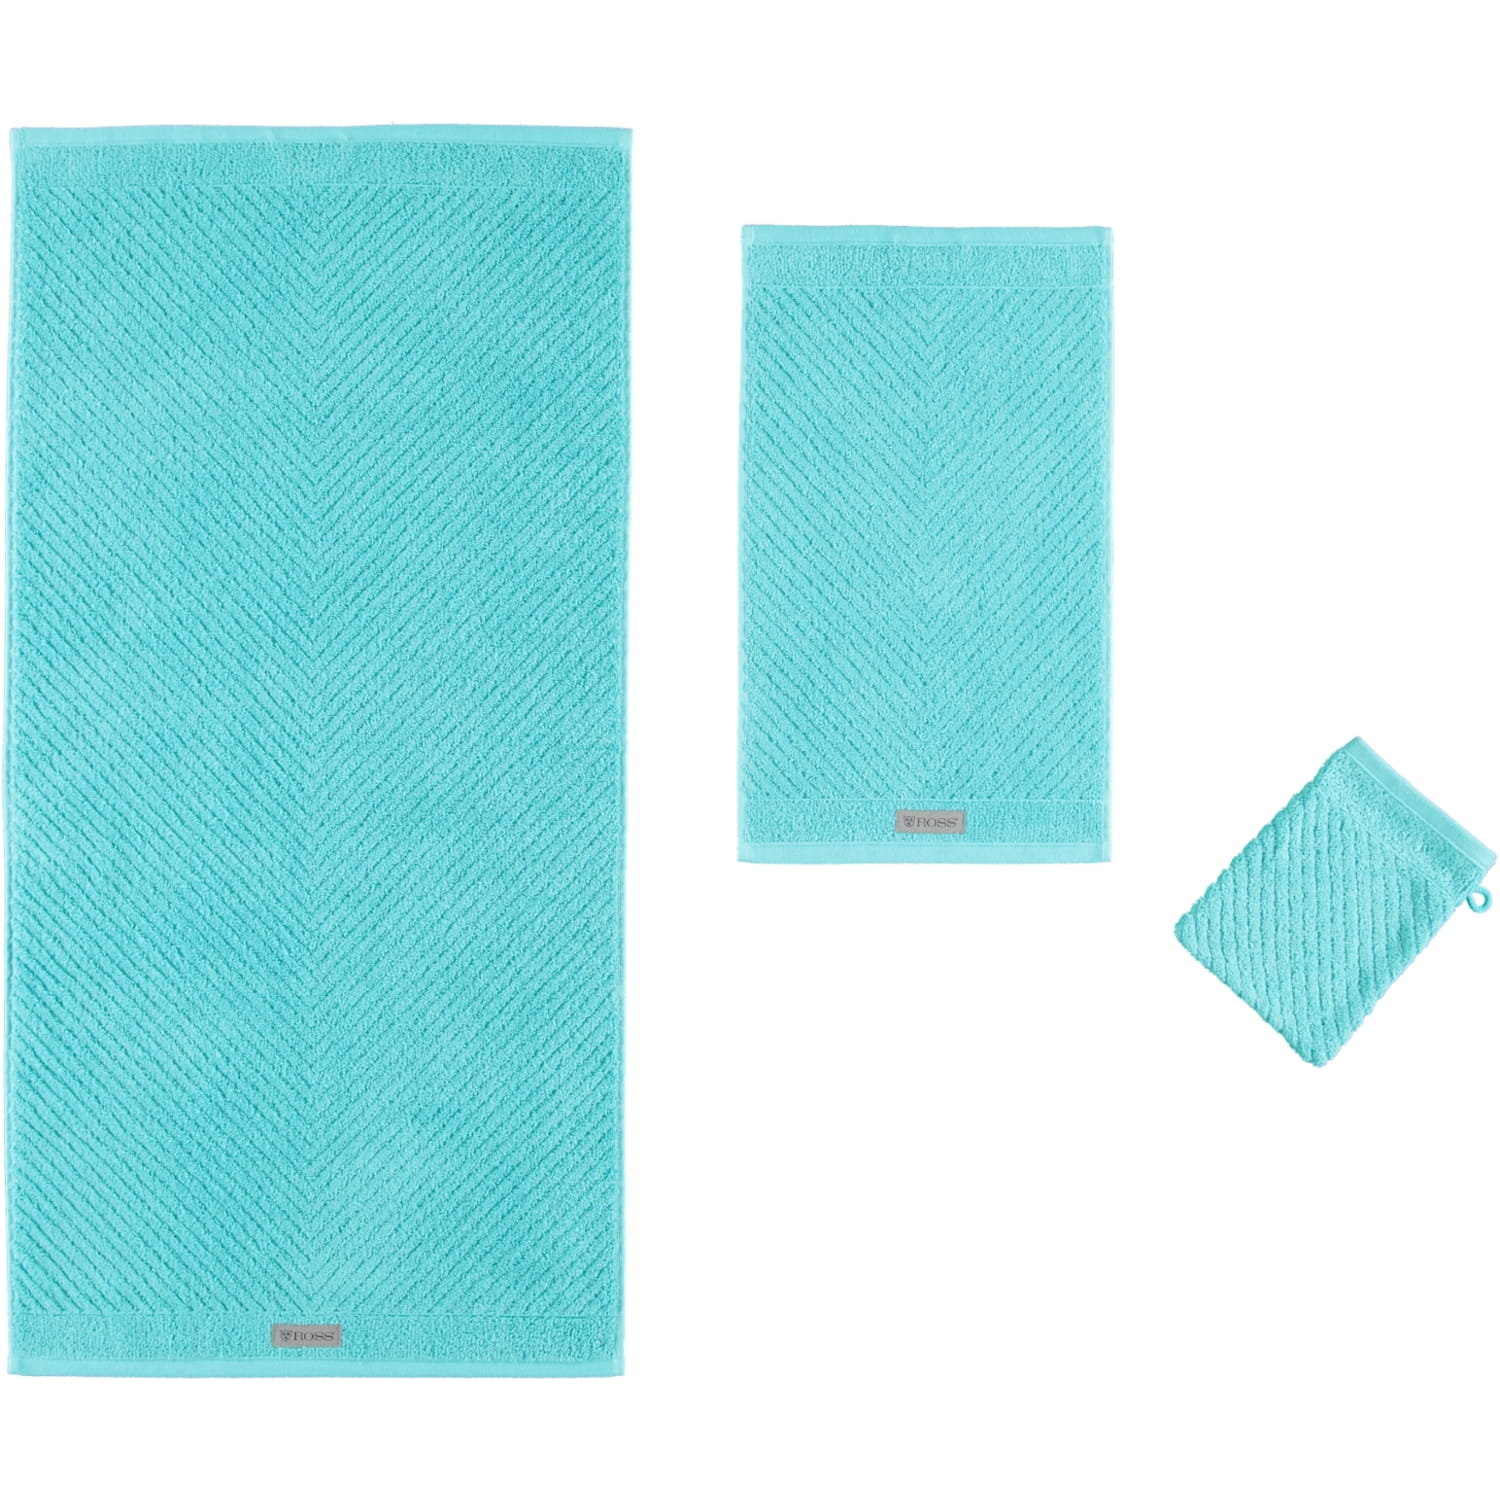 Ross Smart Handtücher Marken - | | 4006 | Ross 34 Ross - Farbe: lagune